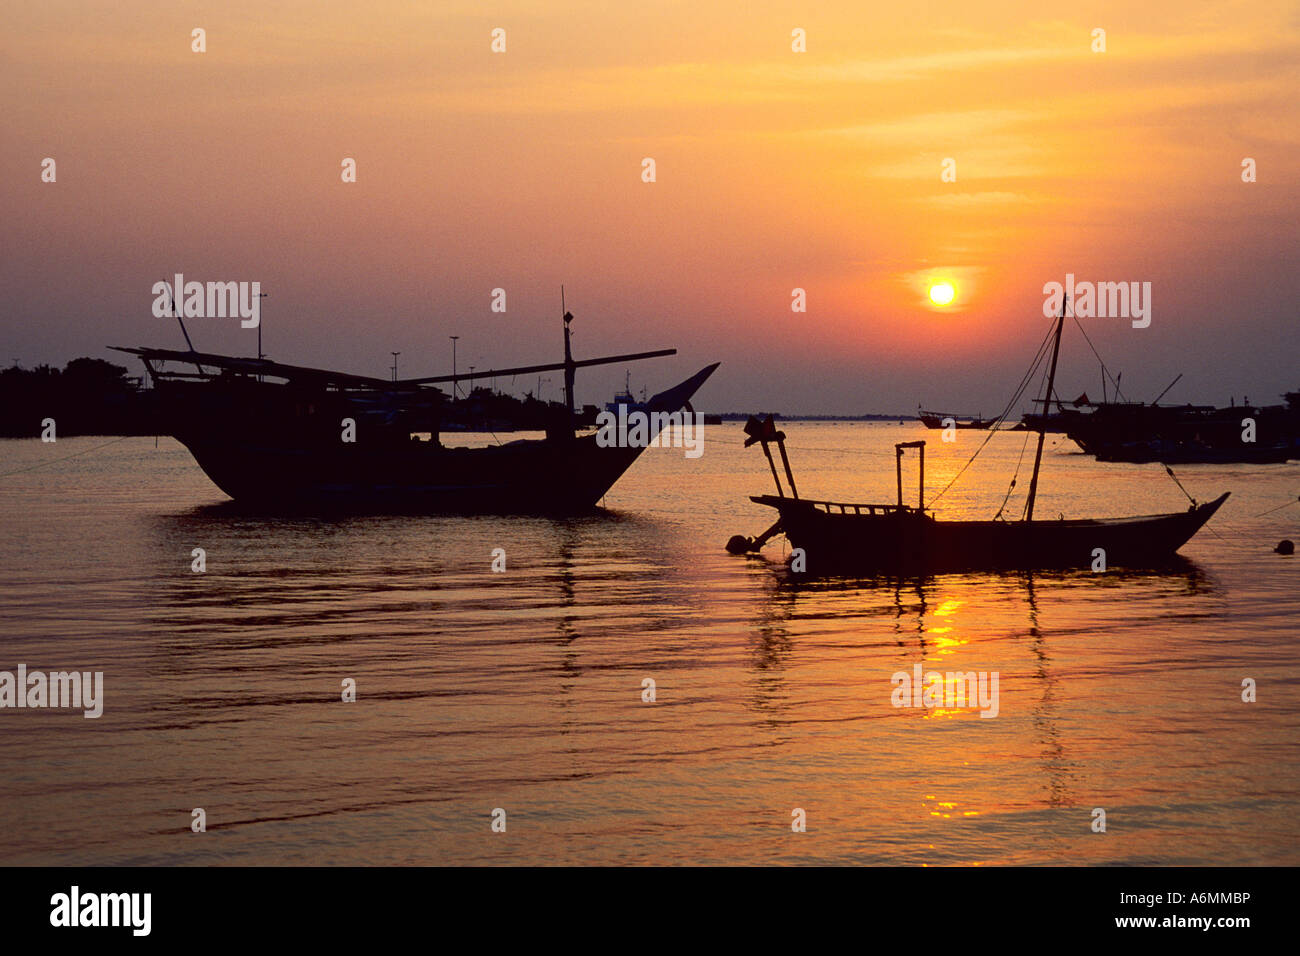 Batin harbour at sunset Abu Dhabi United Arab Emirates Stock Photo